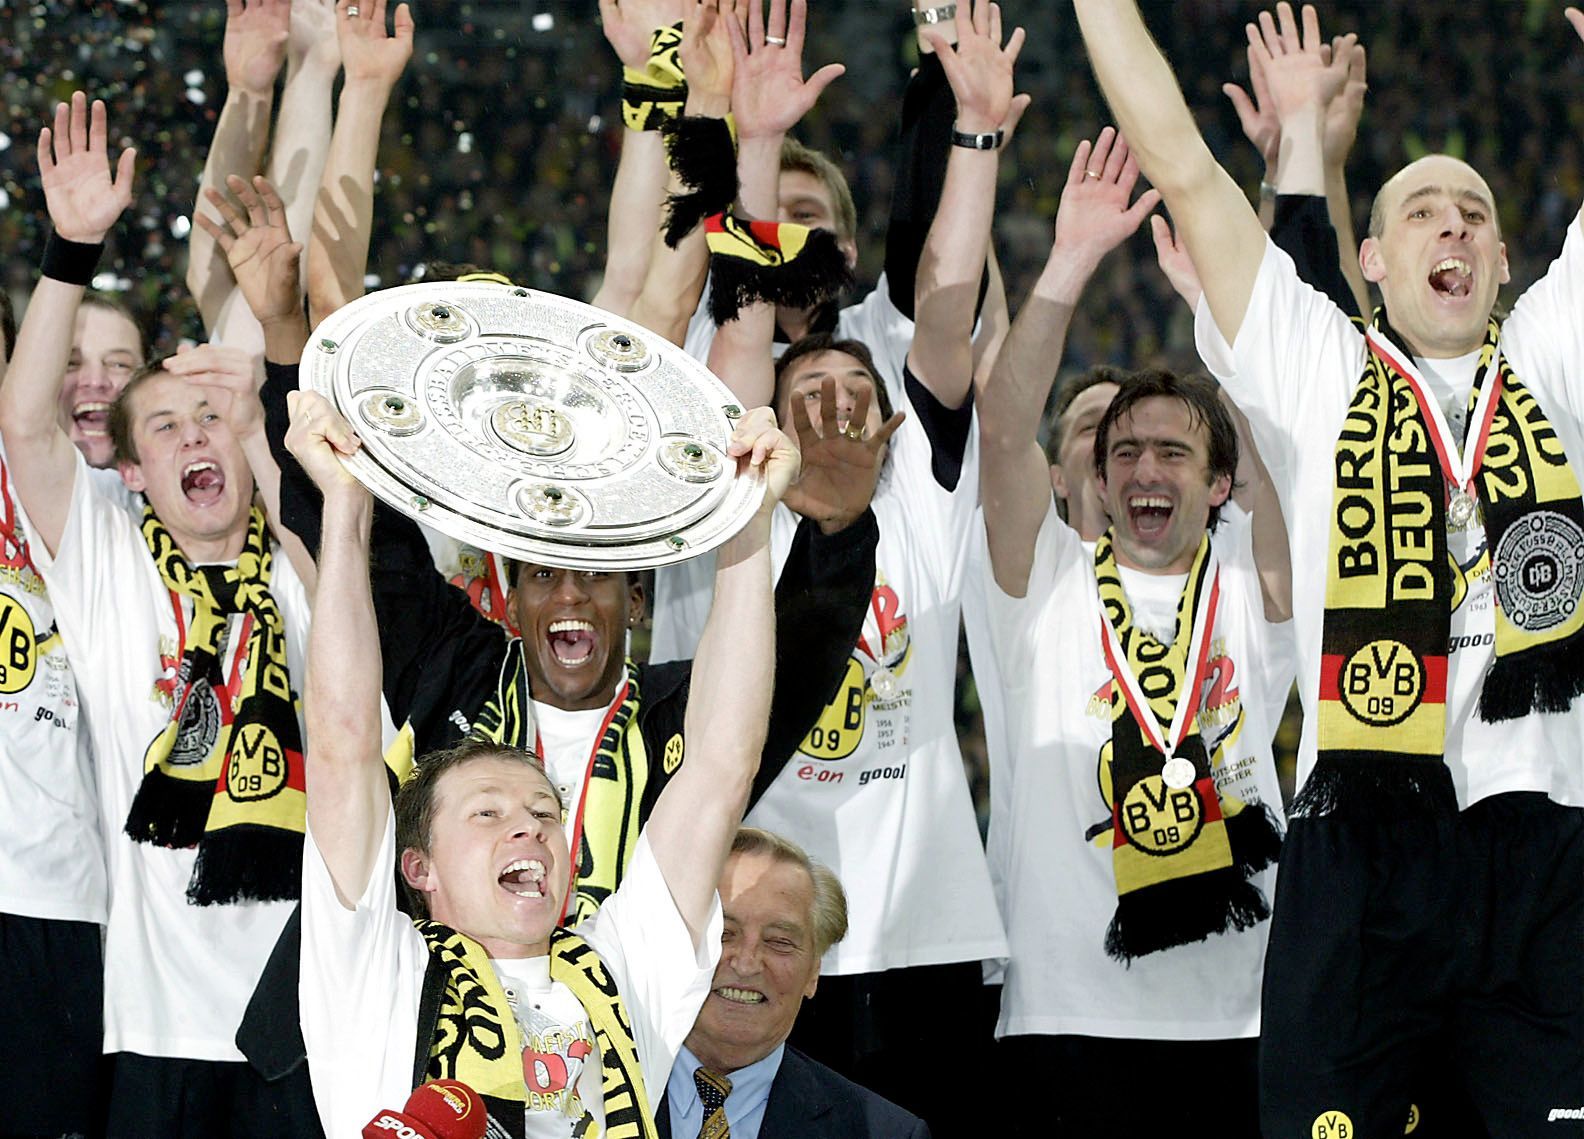 Tomáš Rosický a Jan Koller, Borussia Dortmund (titul 2002)